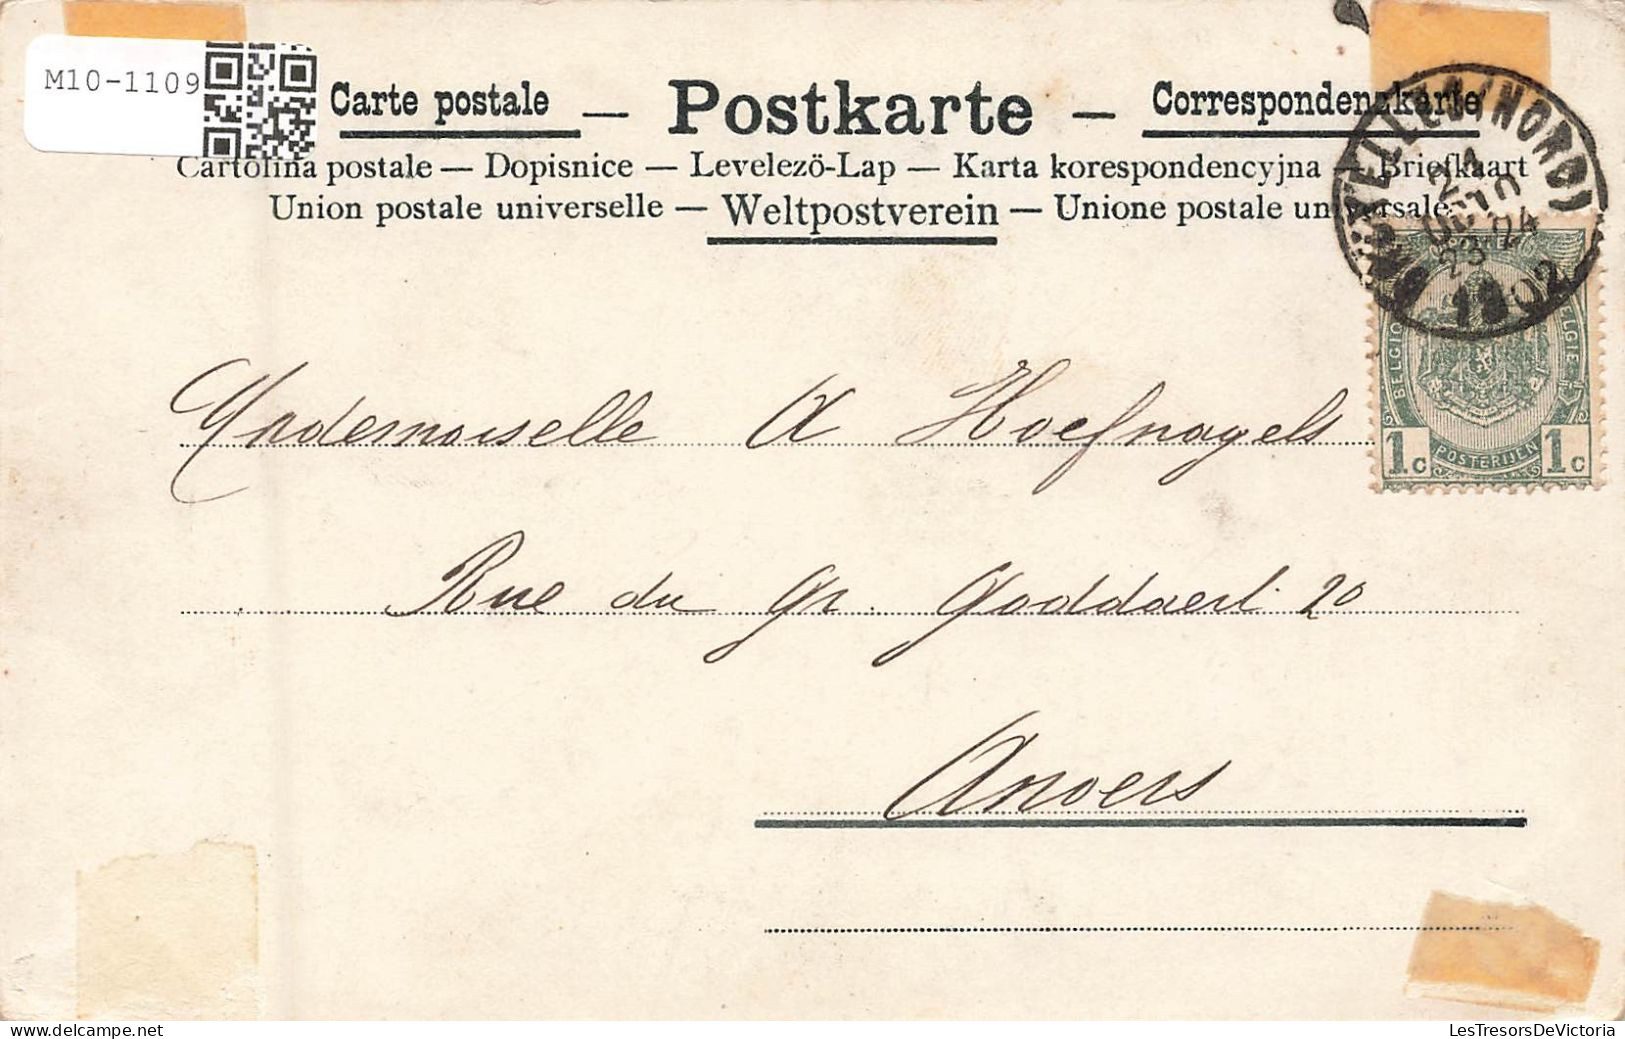 ILLUSTRATEURS - Non Signés - Colorisé - Animé - Carte Postale Ancienne - Avant 1900